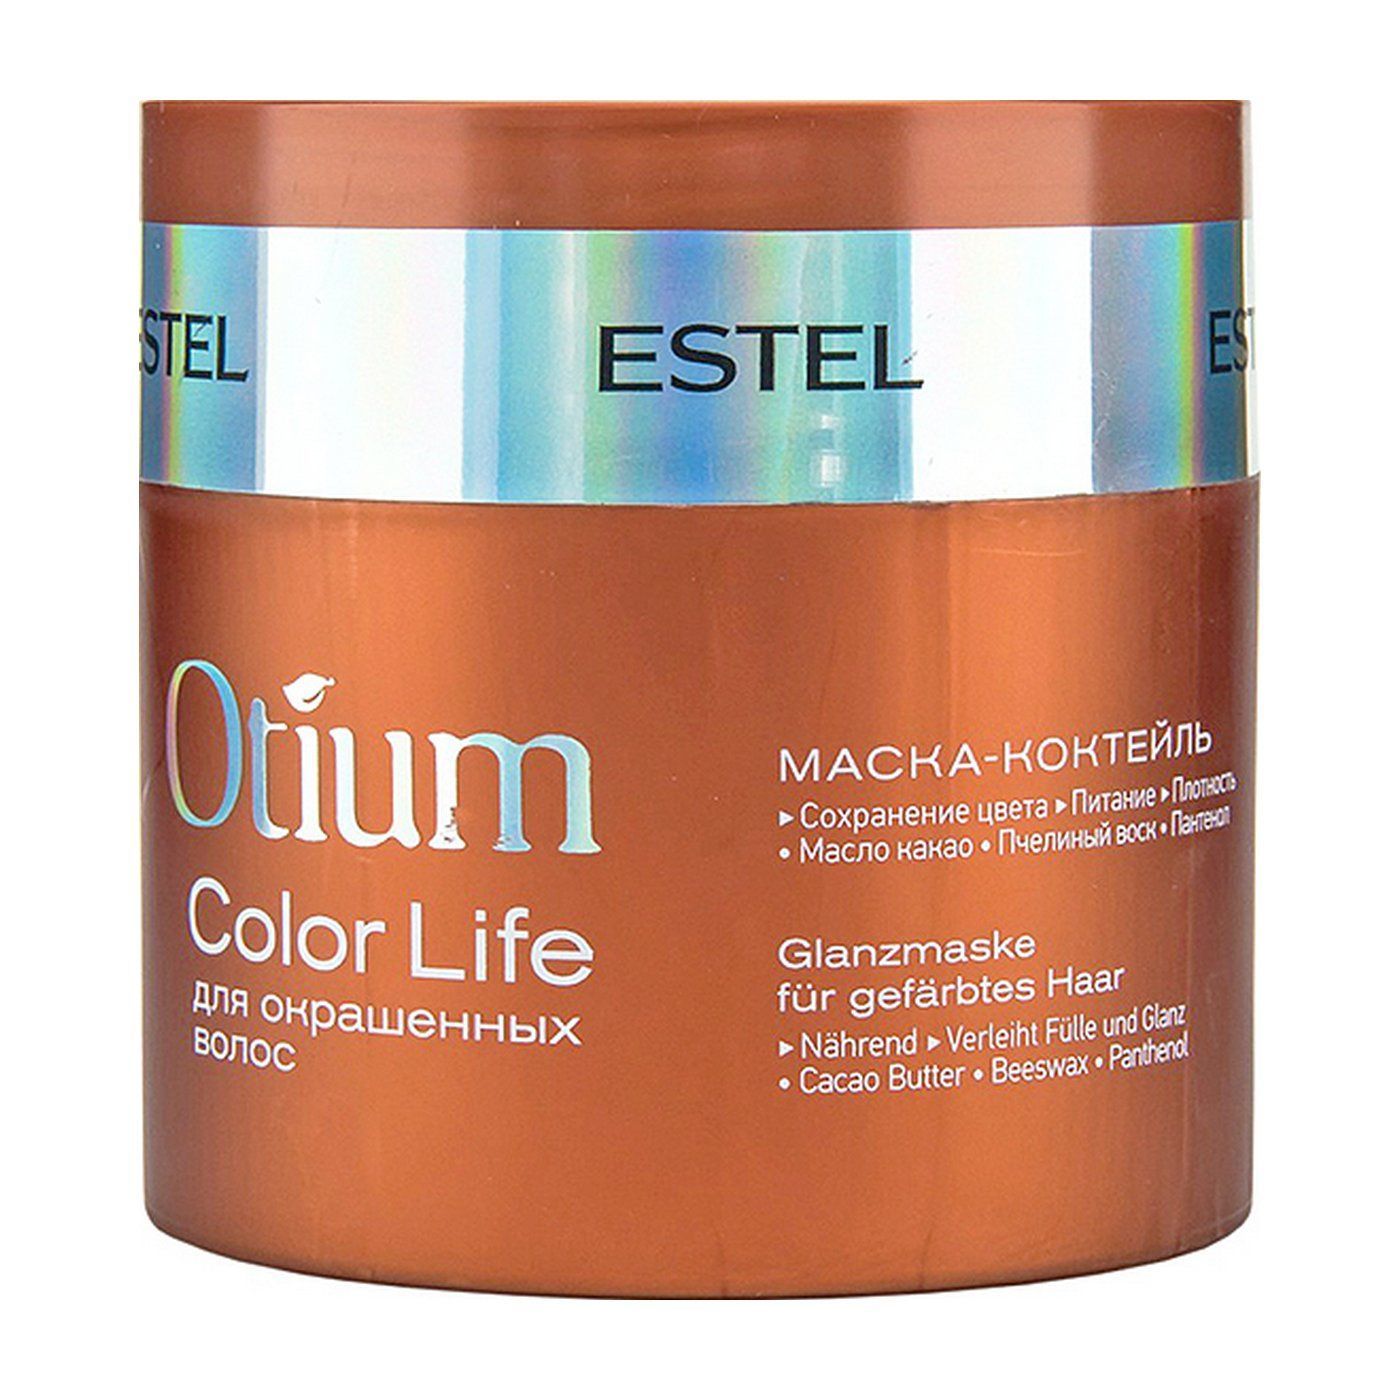 Маска для волос 9. Estel Otium Color Life маска. Маска-коктейль для окрашенных волос Otium Color Life, 300 мл. Estel/ маска-коктейль для окрашенных волос Otium Color Life (300 мл). Маска Эстель отиум для окрашенных волос.